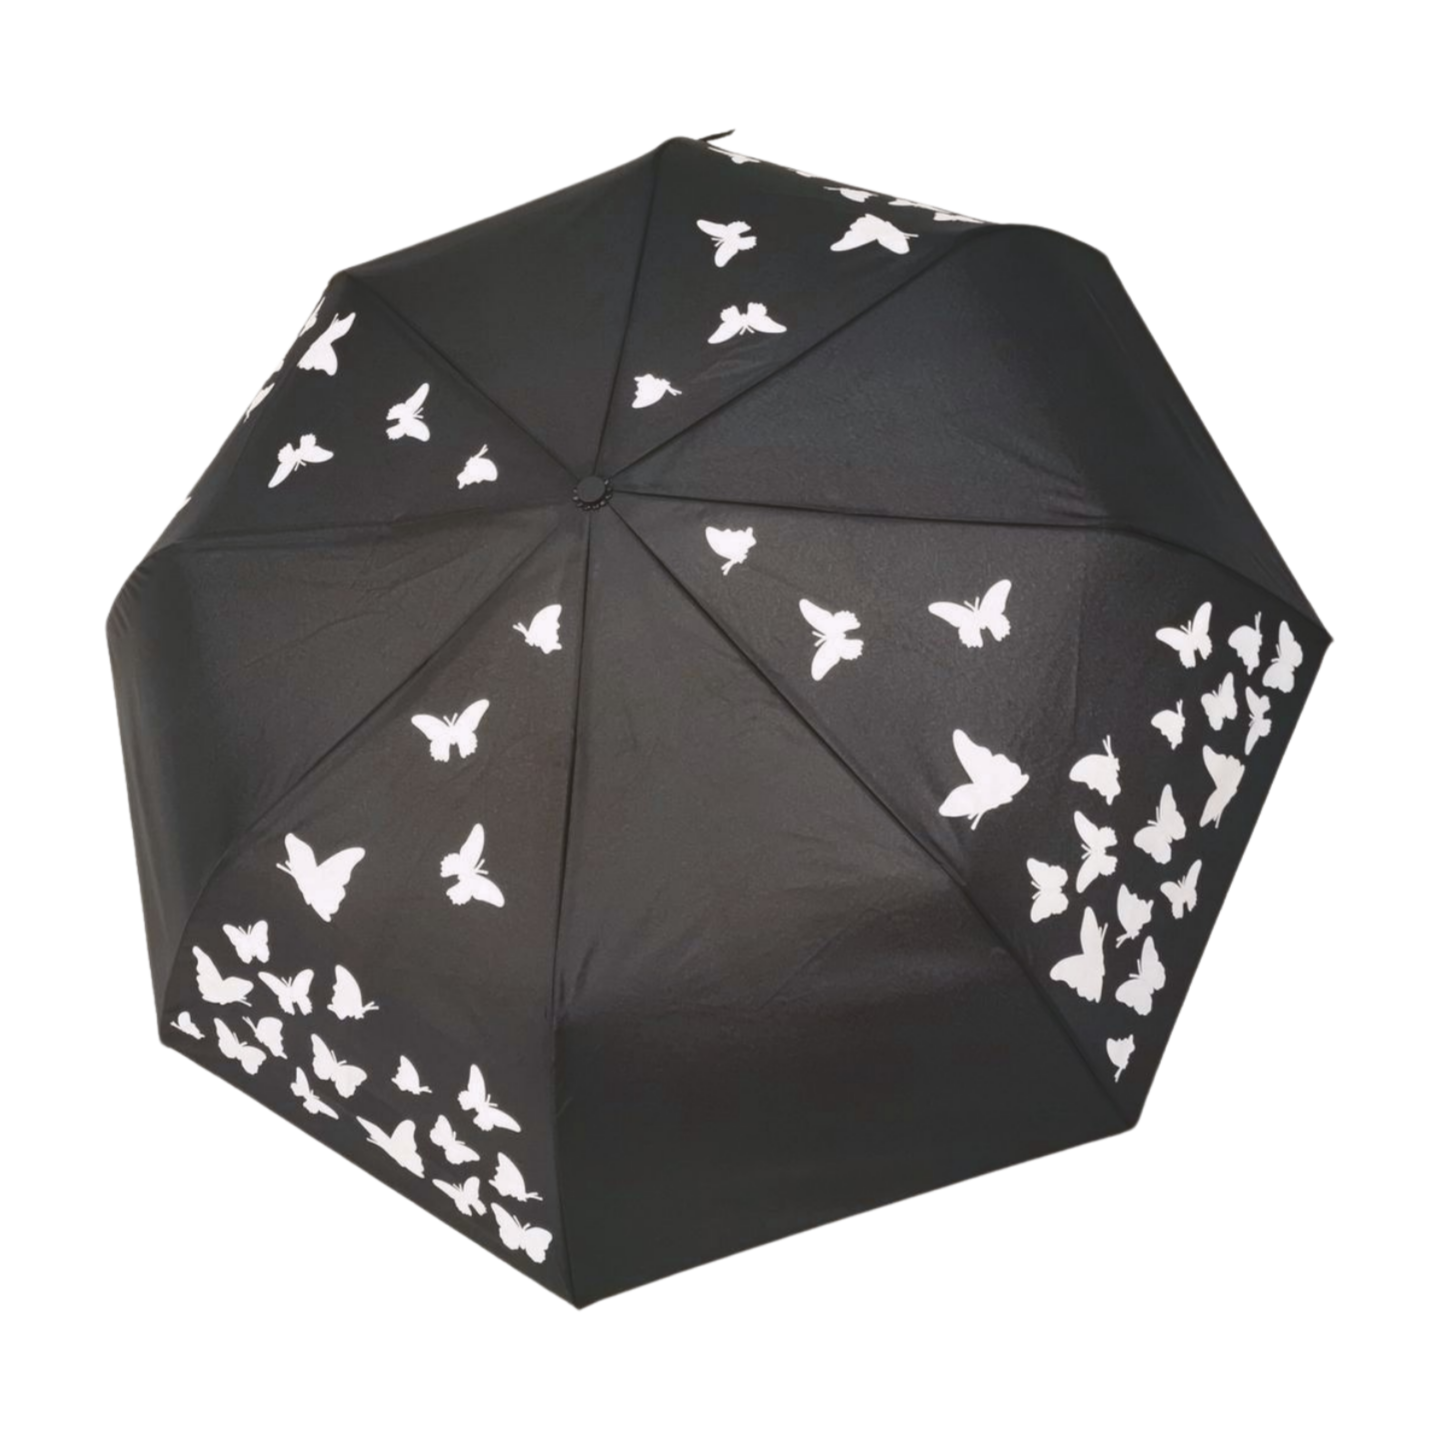 https://www.hodaumbrella.com/magic-color-changing-three-folding-umbrella-product/